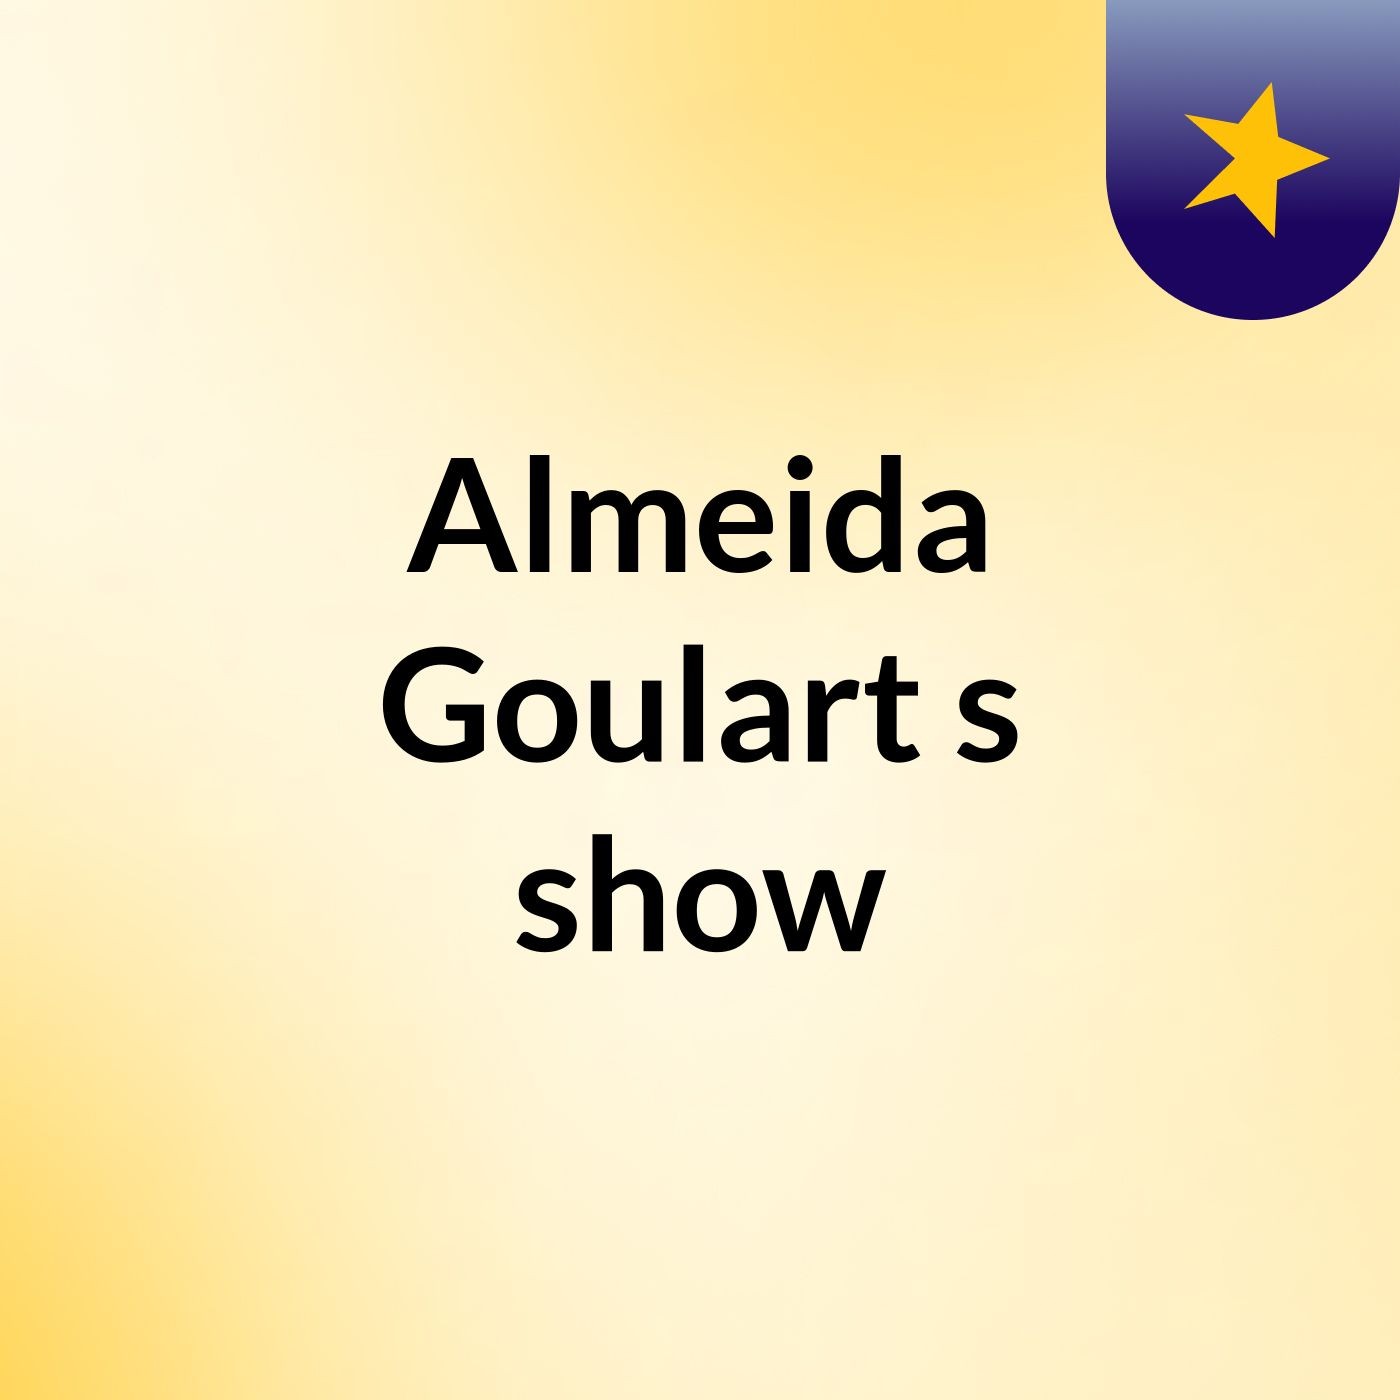 Almeida Goulart's show